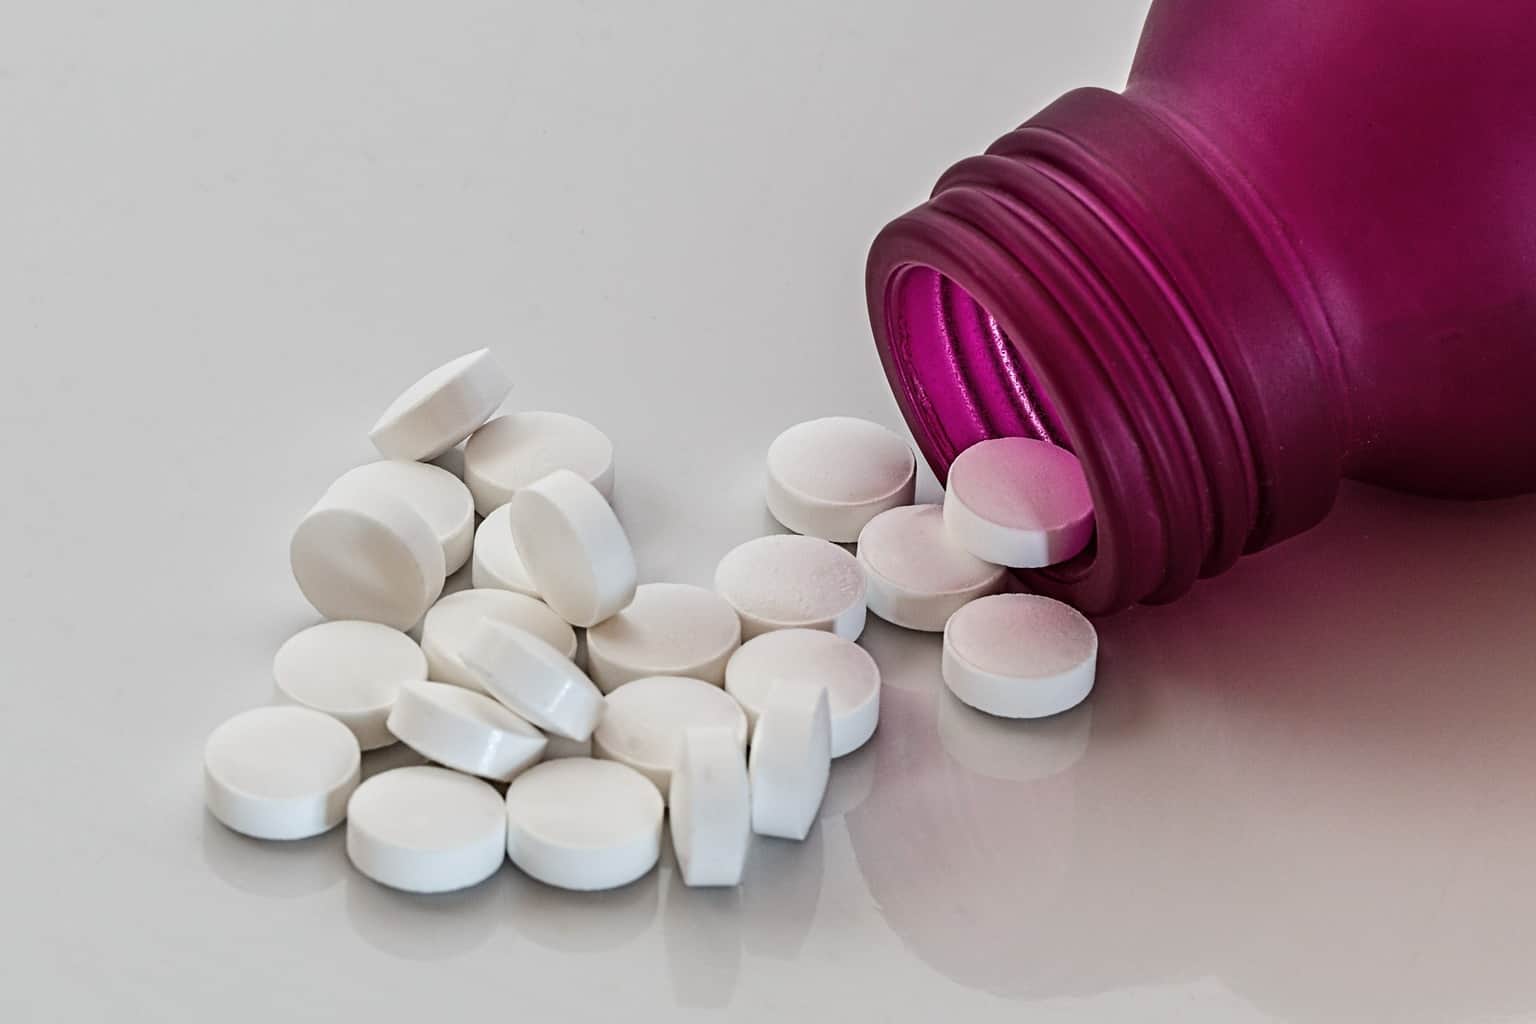 illustration of white pills